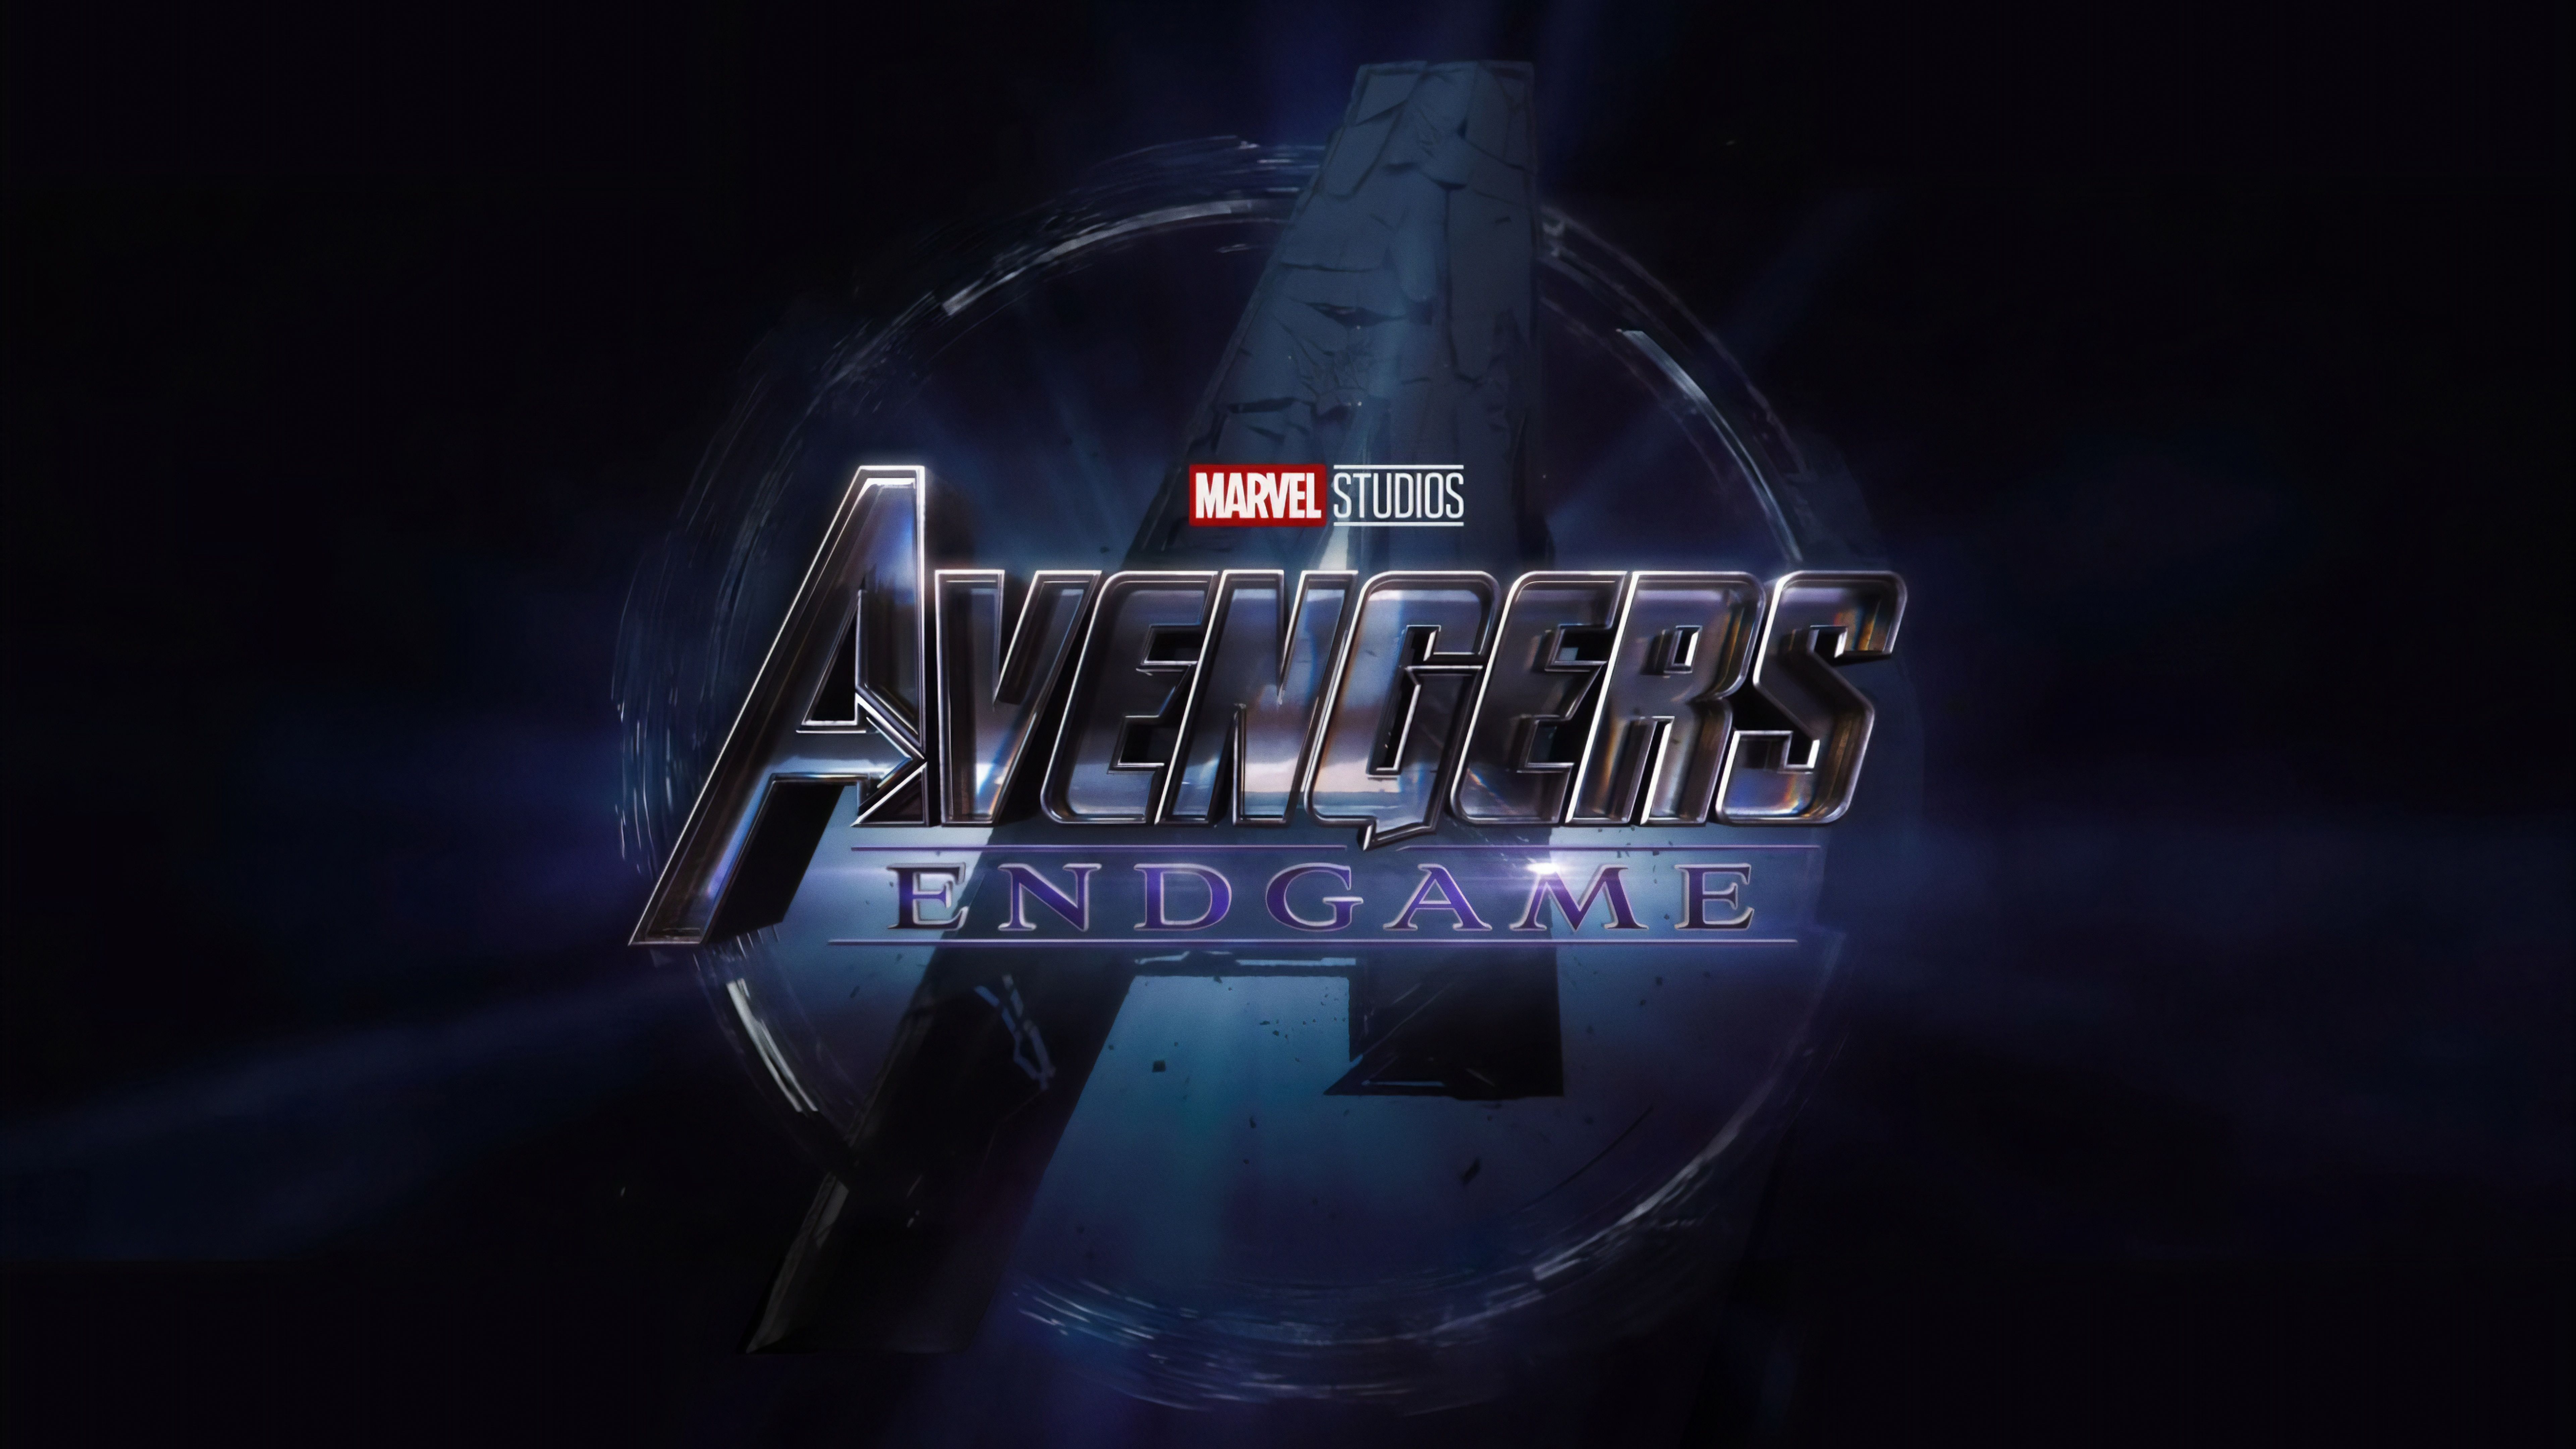 Avengers Endgame Marvel Studios Wallpaper 8k Ultra HD